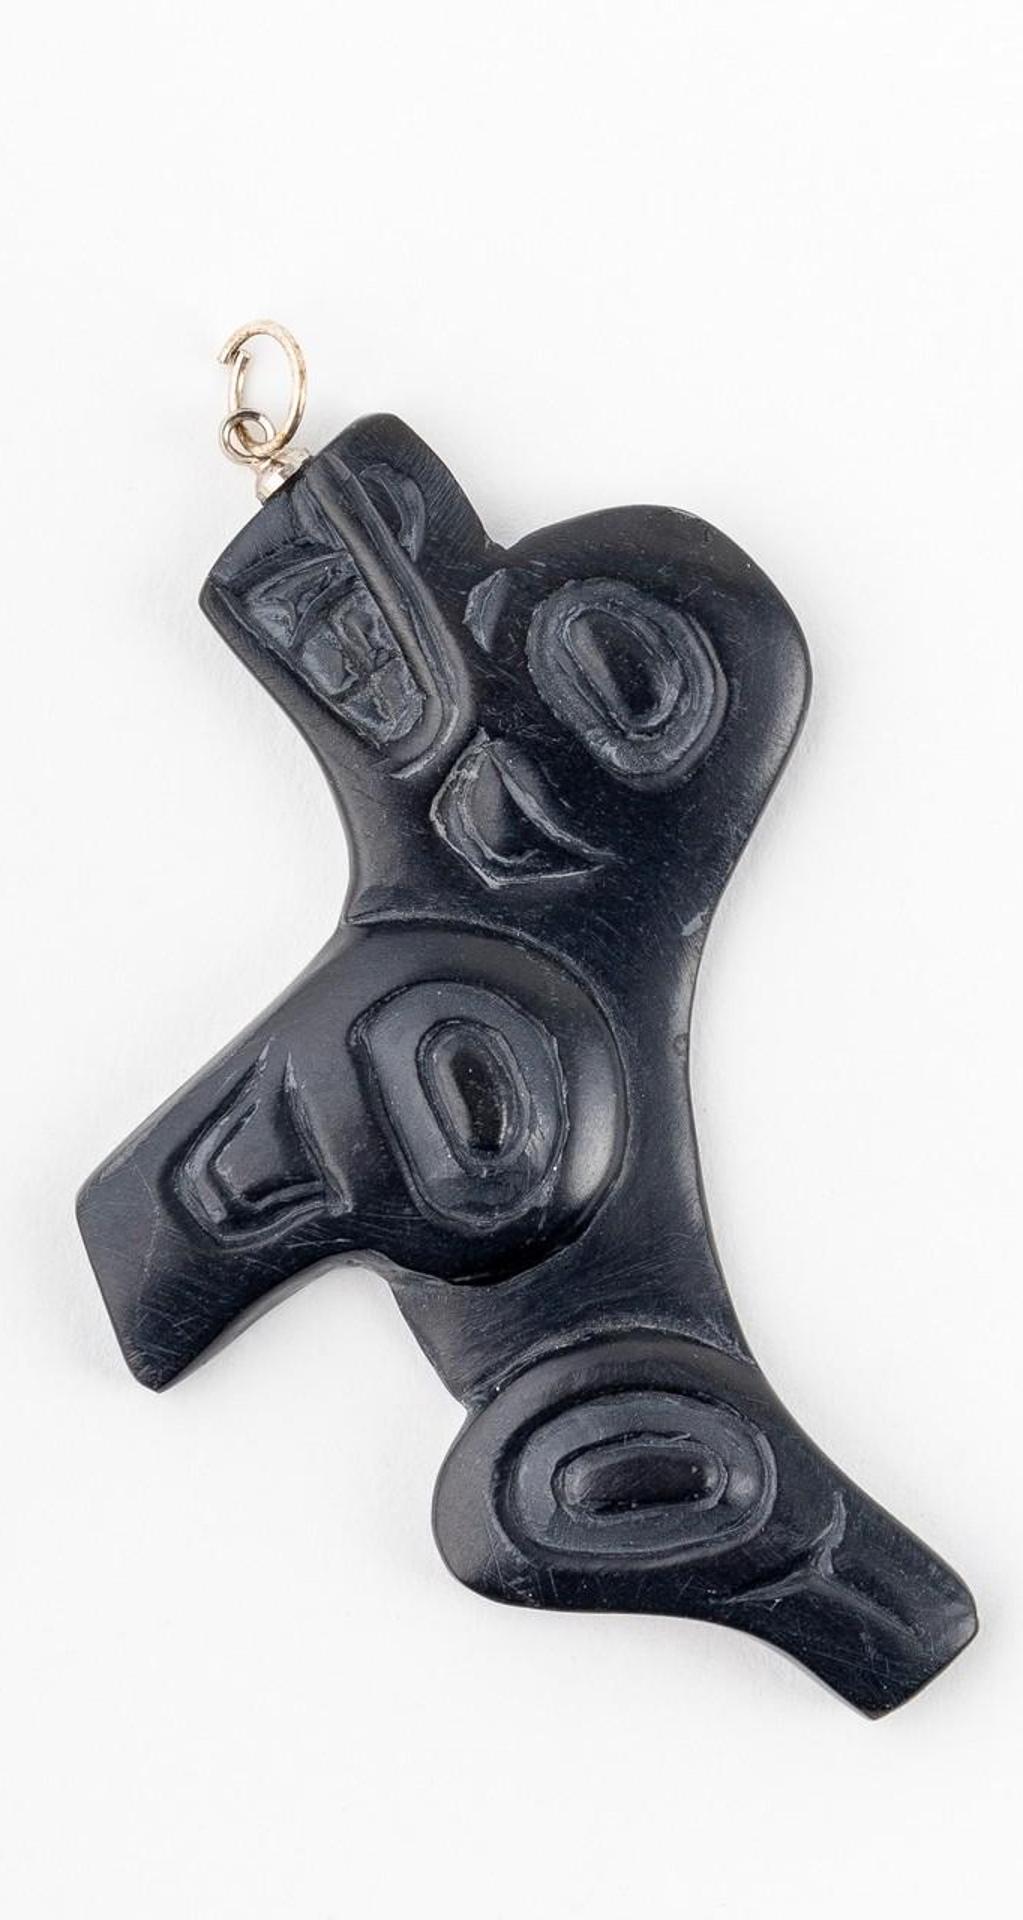 Greg White - a carved argillite pendant depicting Seal